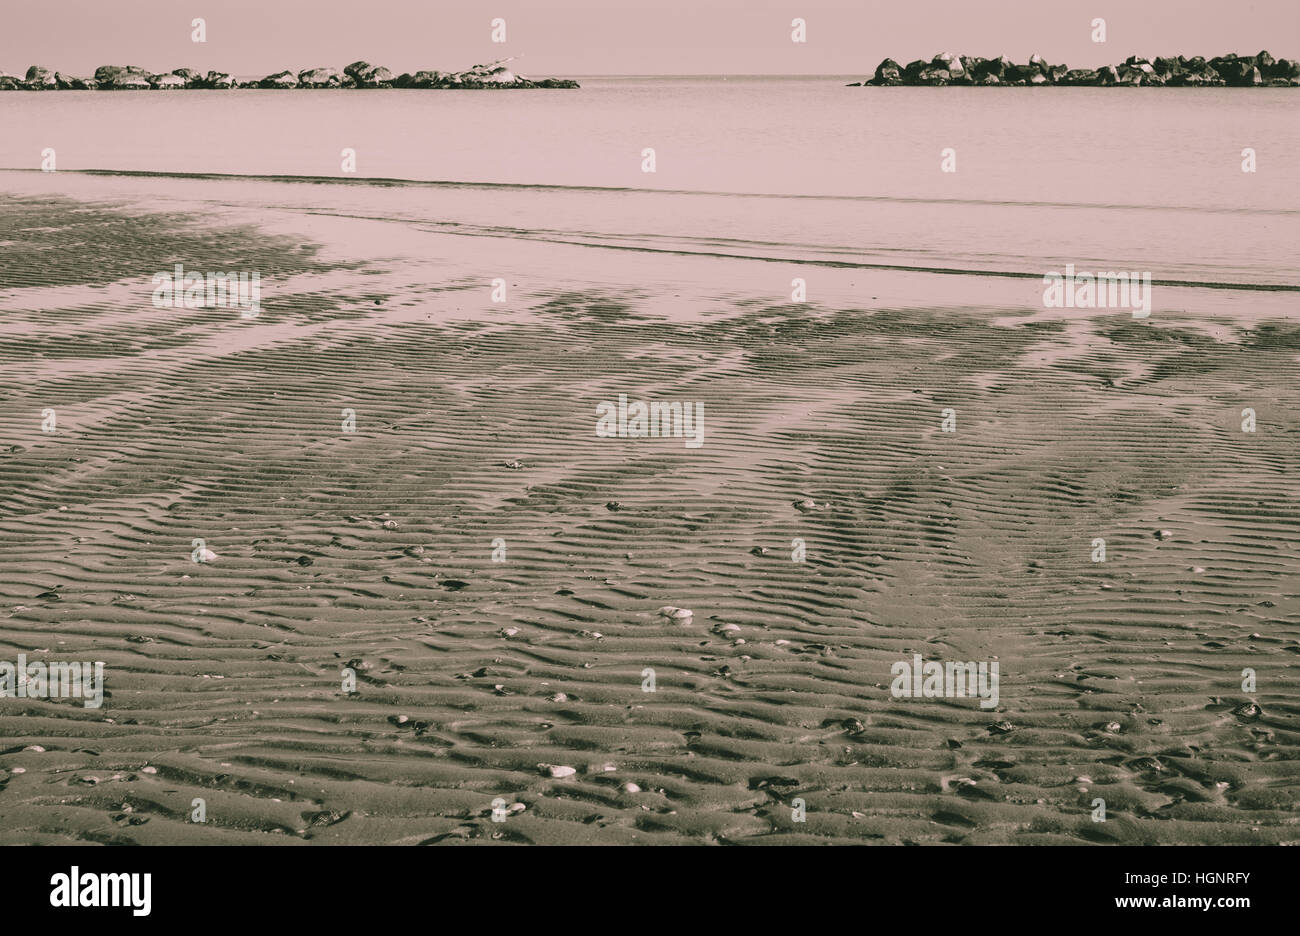 Blocs lourds horizontale barrière contre l'érosion des plages en mer Adriatique. Italie Ravenne Casalborsetti. Banque D'Images